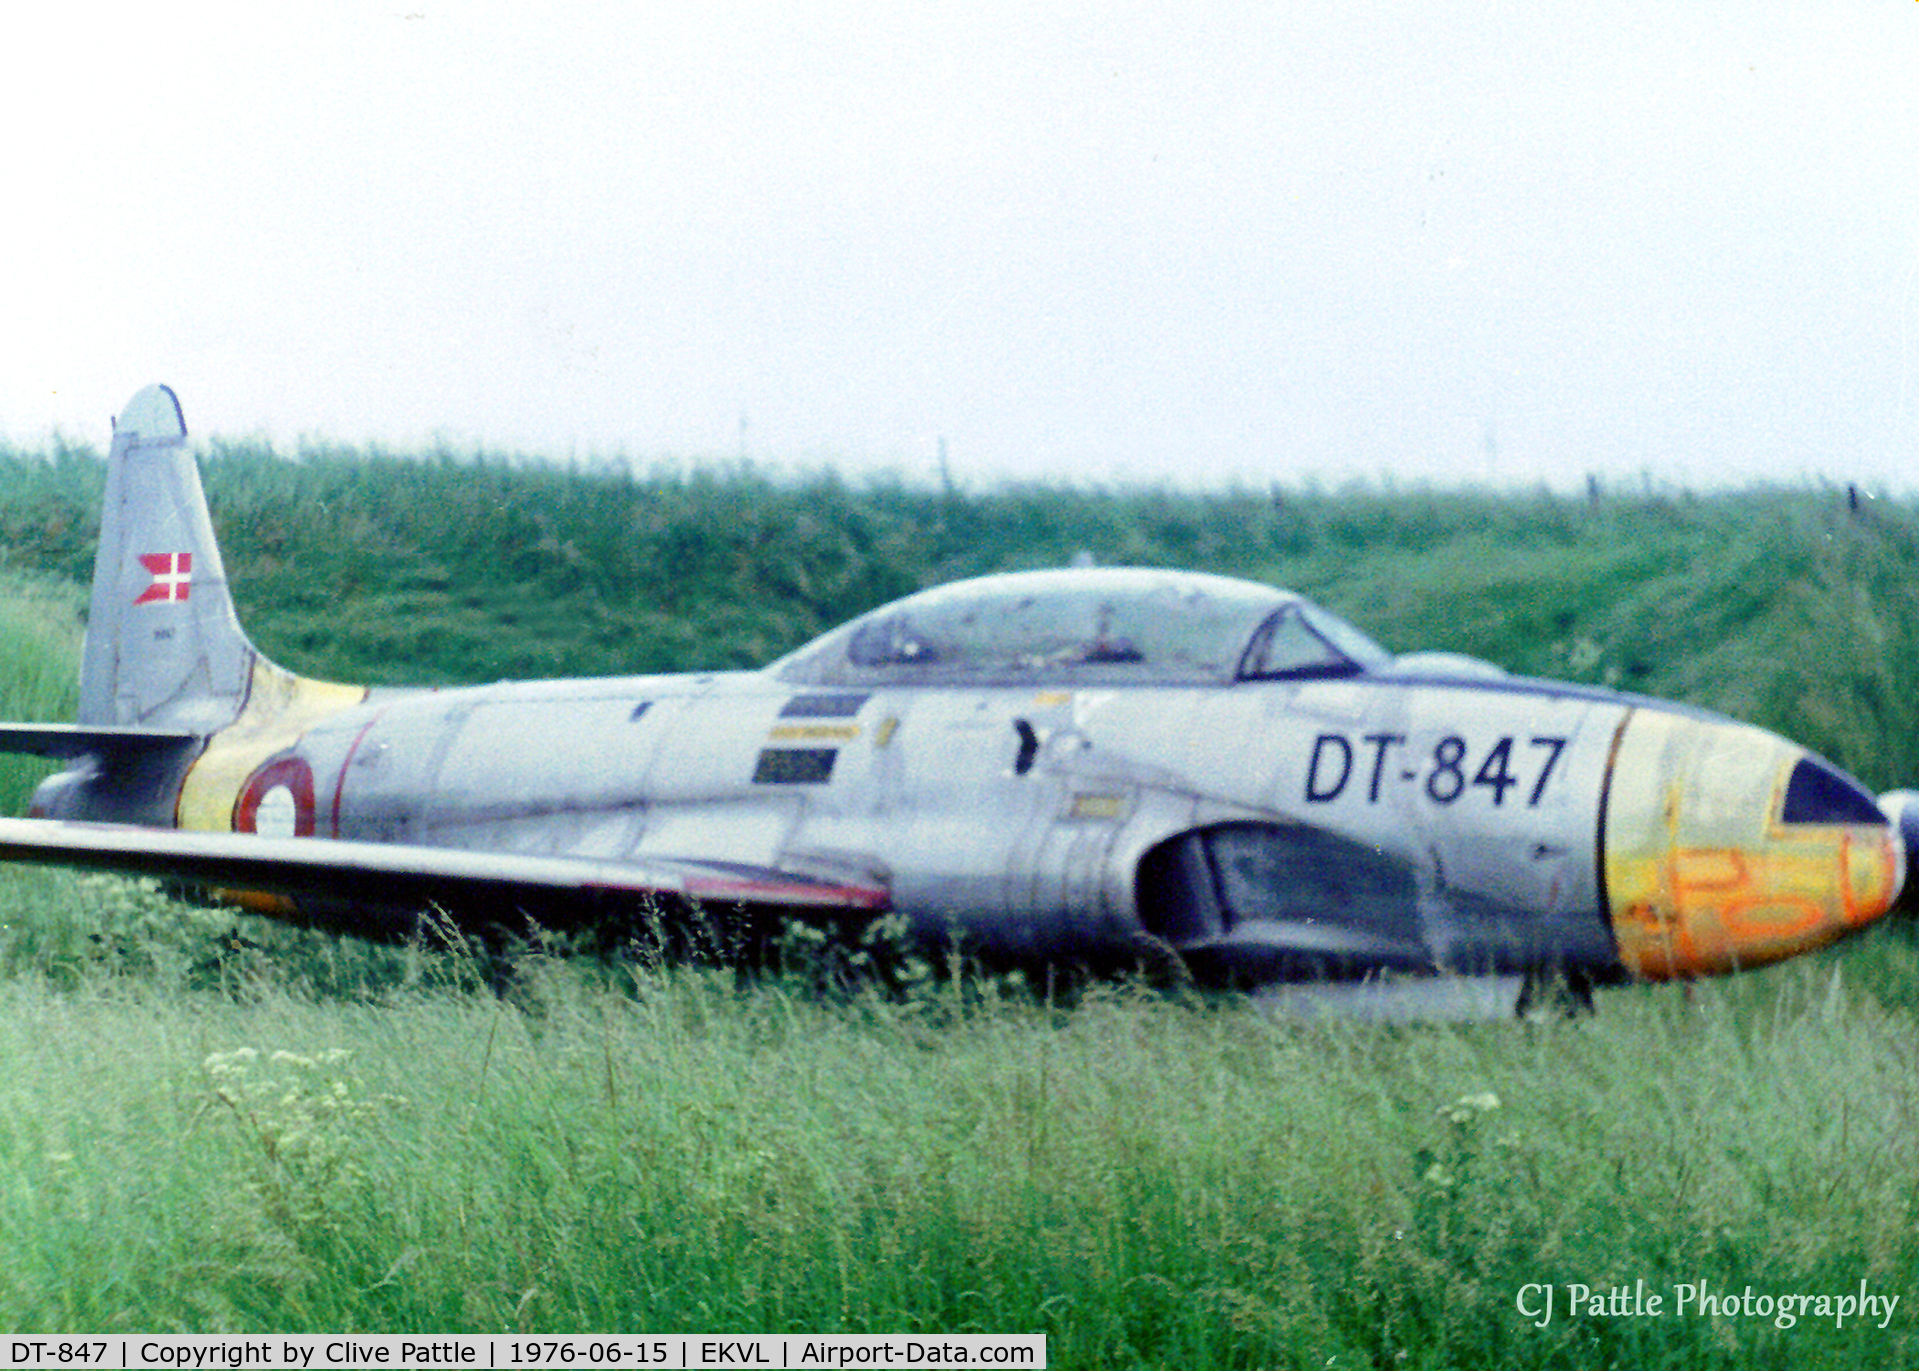 DT-847, 1951 Lockheed T-33A Shooting Star C/N 580-6179, Scanned from print. DT-847 in storage at Vaerlose, Denmark (EKVL)